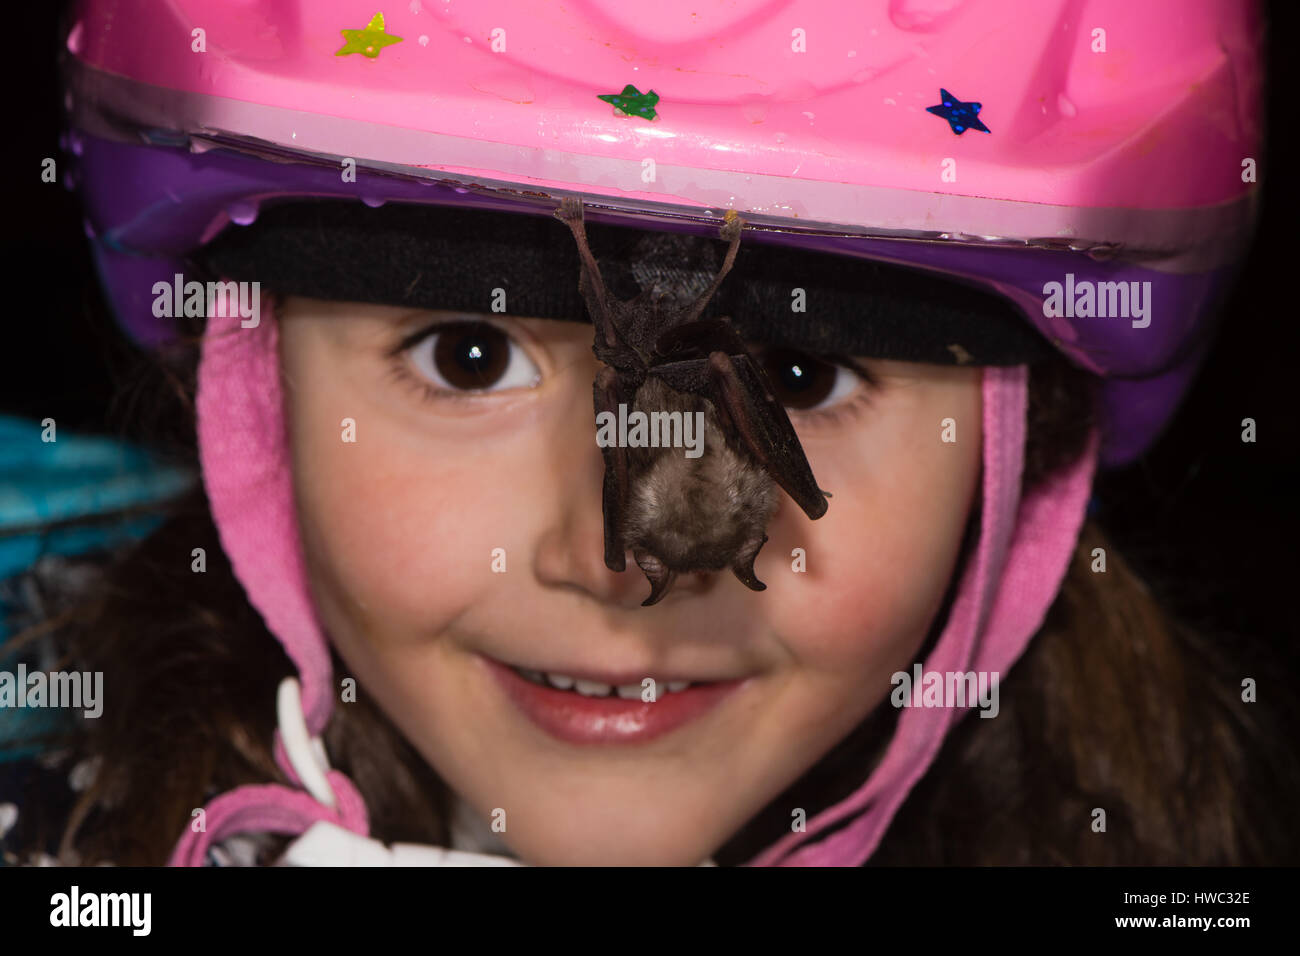 Kind Fledermaus hängen vom Helm zu betrachten. Freundlichen weniger Hufeisennase ruht auf Mädchen Fahrradhelm in einer Höhle in Somerset, Großbritannien Stockfoto